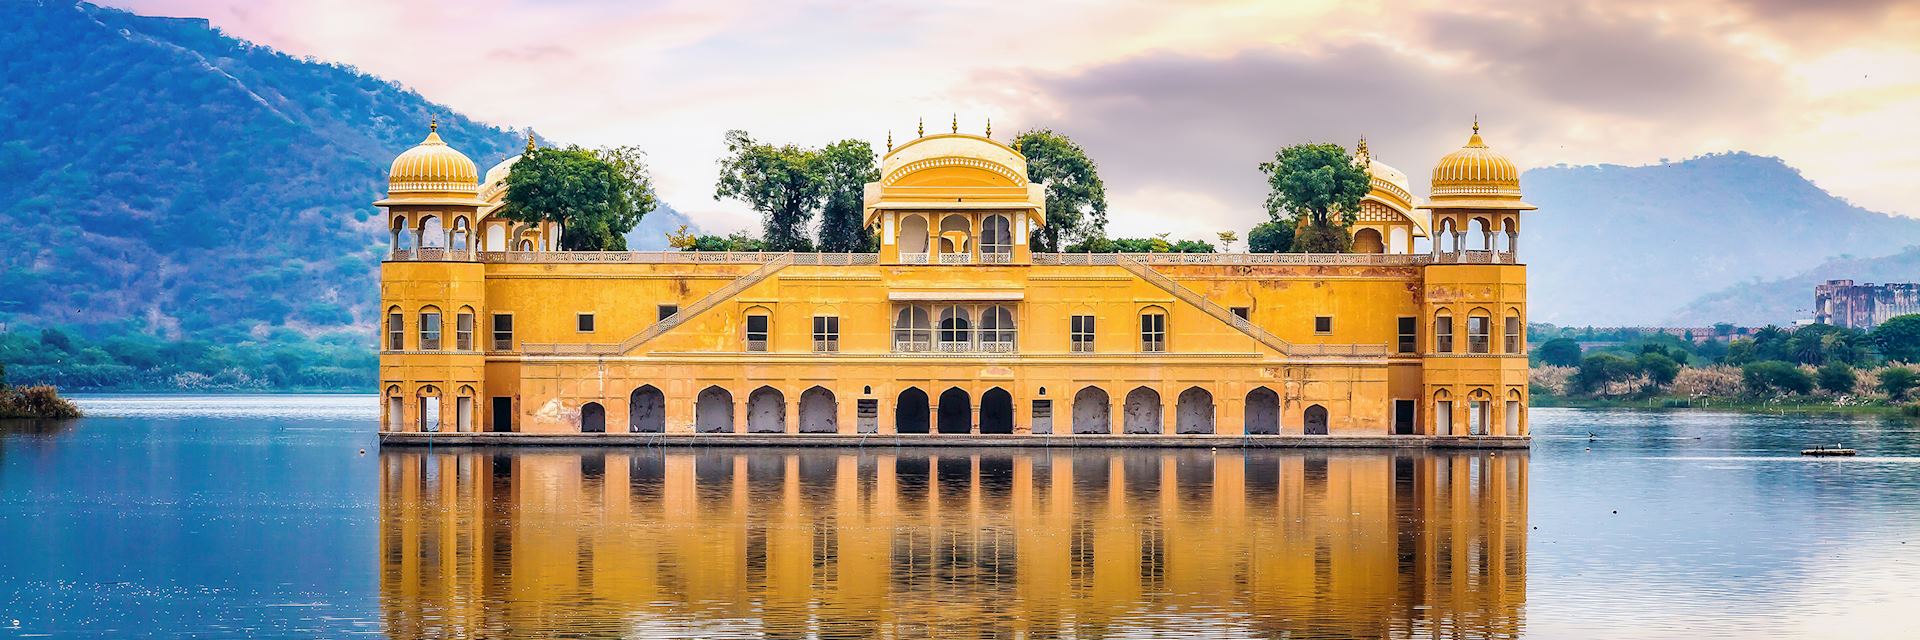 Jal Mahal on Man Sagar Lake in Rajasthan